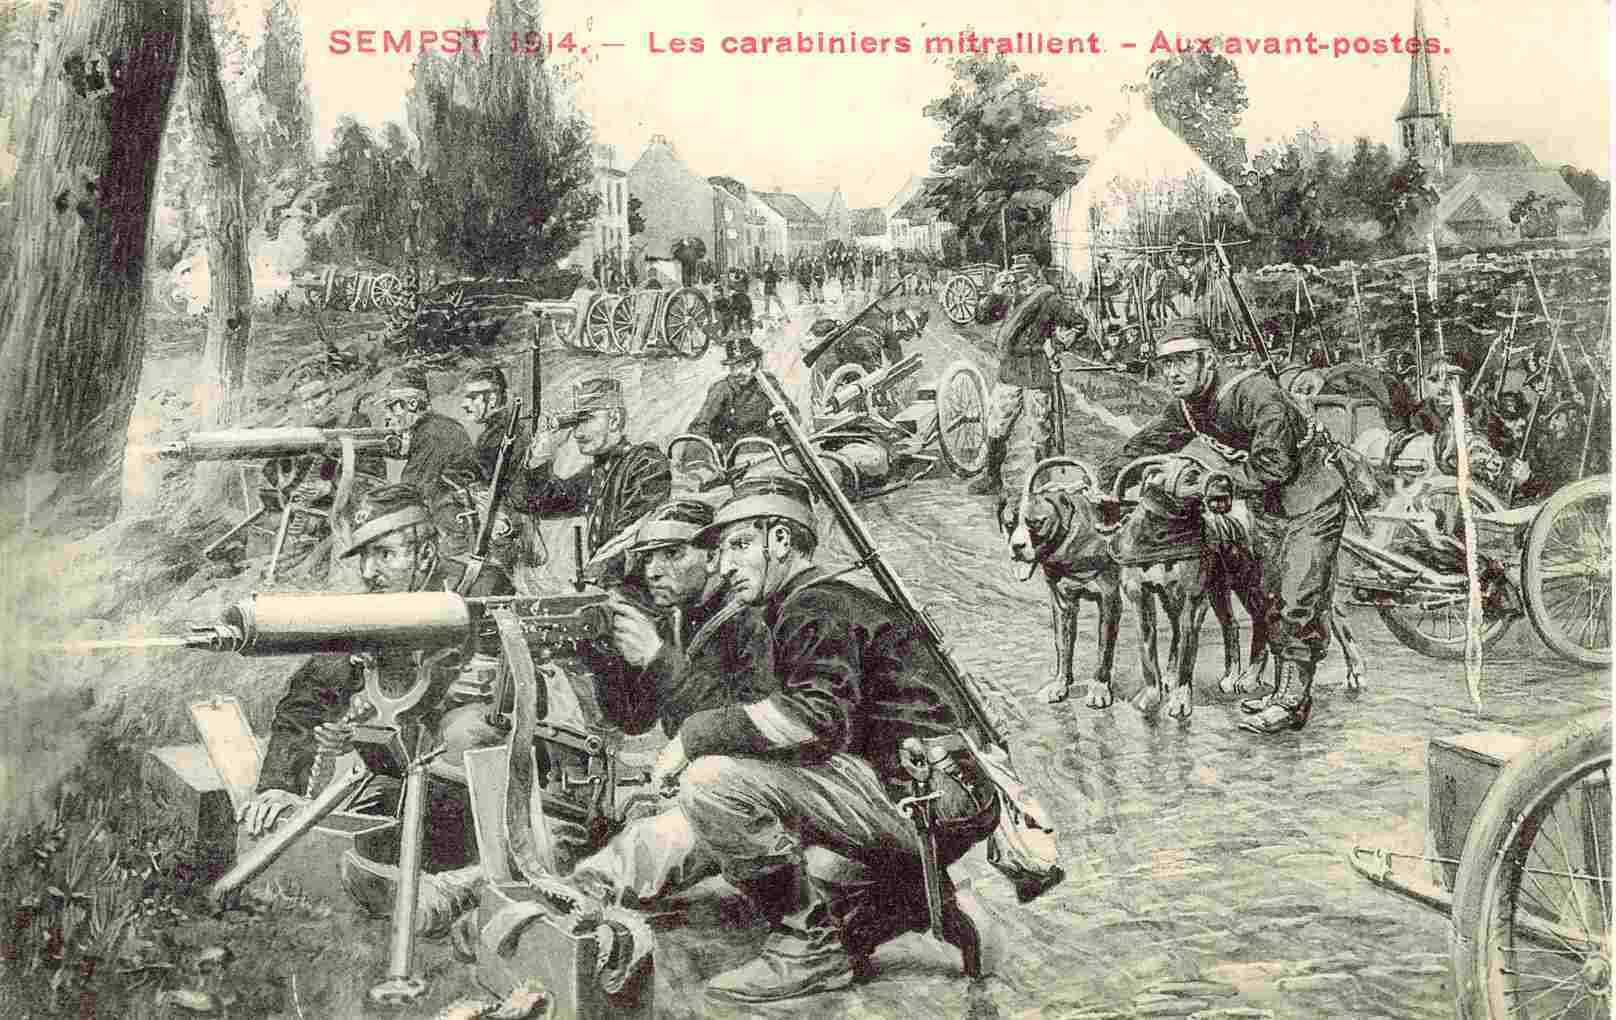 Carte postale : "1914 les carabiniers mitraillent aux avant poste" ; derrière les soldats se trouve le pont d'Eppegem et sur la droite on aperçoit l'église - collection particulière